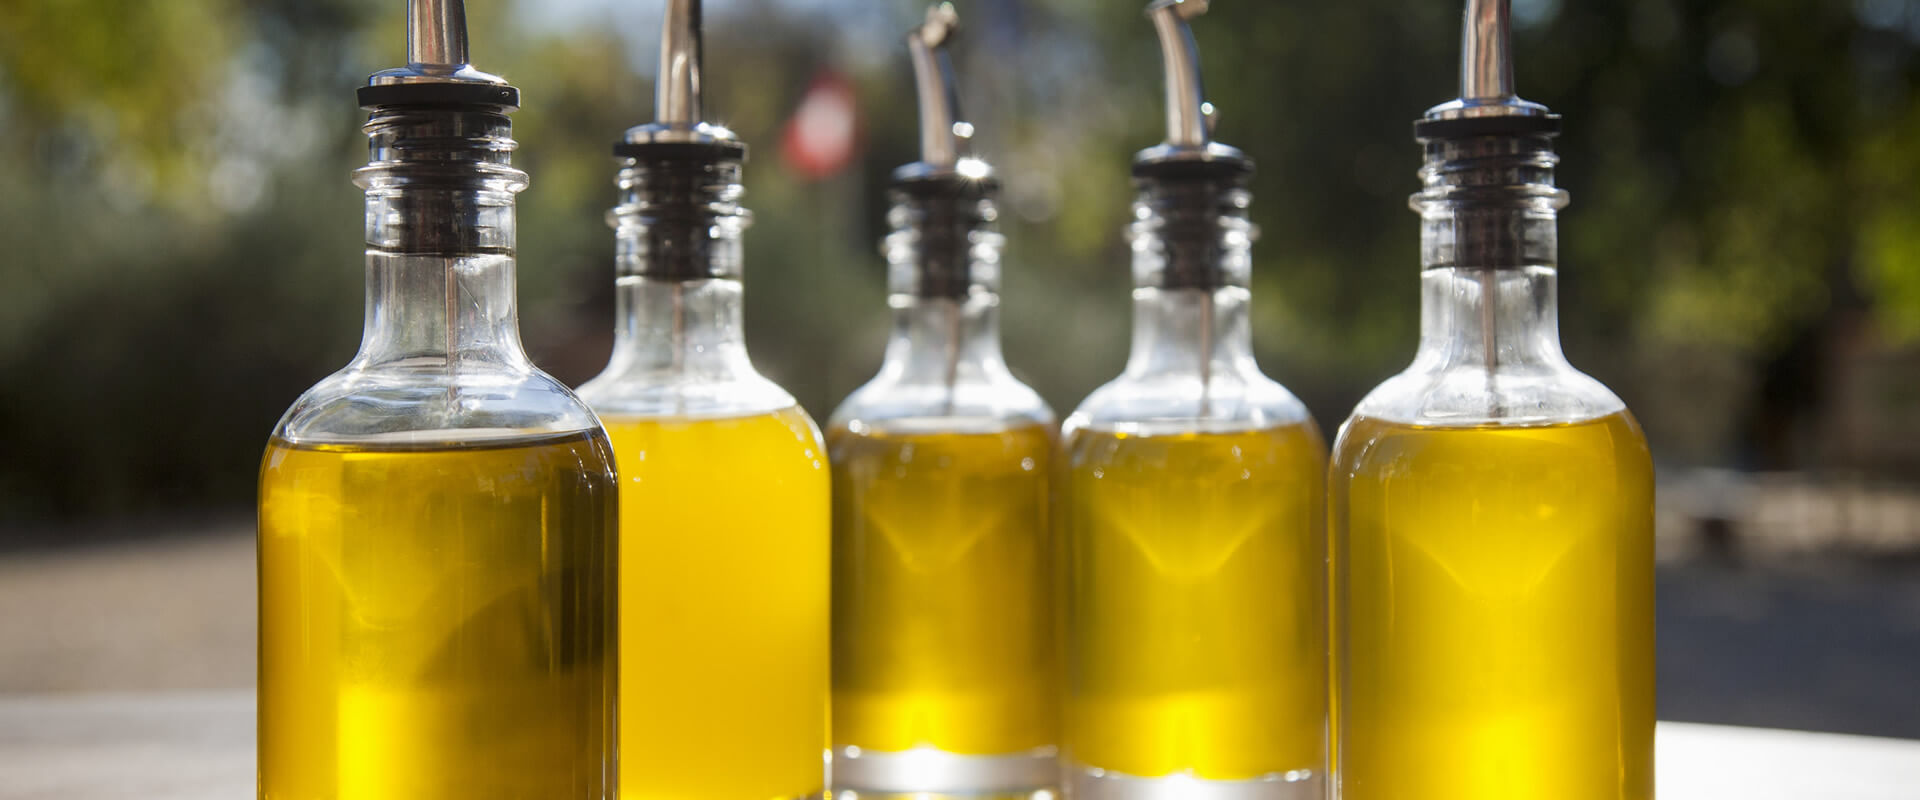 Differenza tra olio di oliva e extra vergine – Fratelli Carli